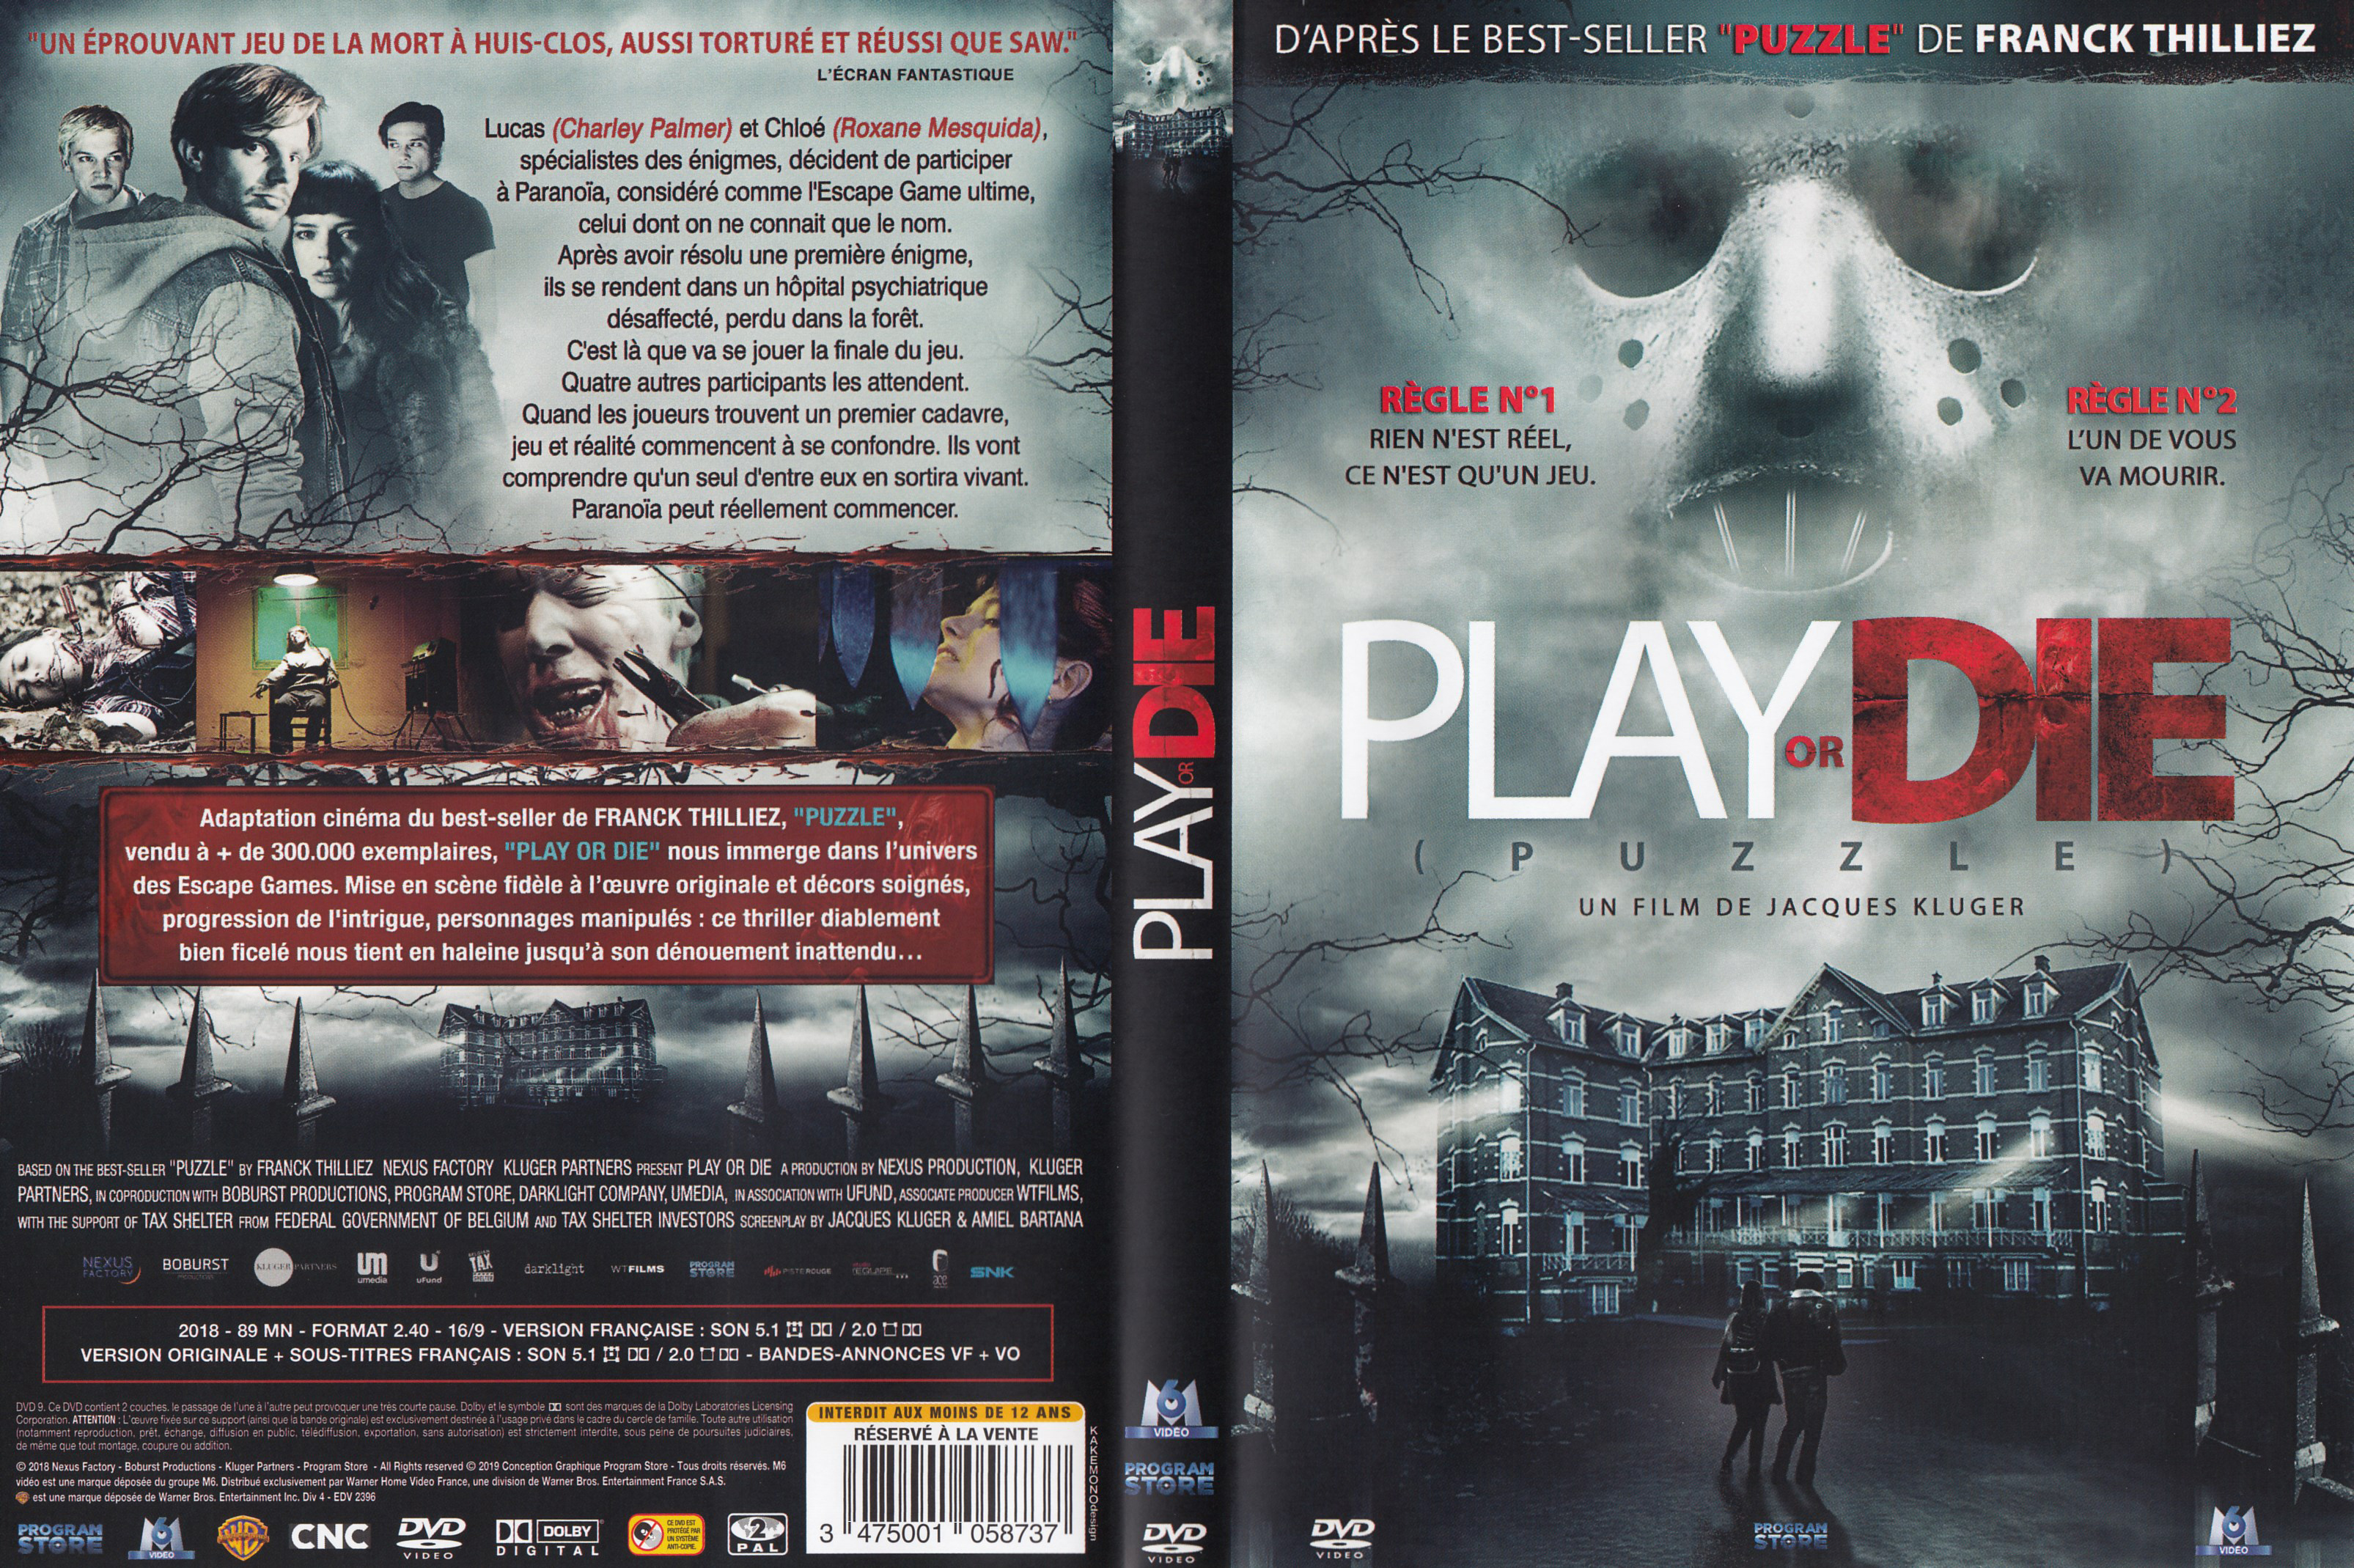 Jaquette DVD Play or die